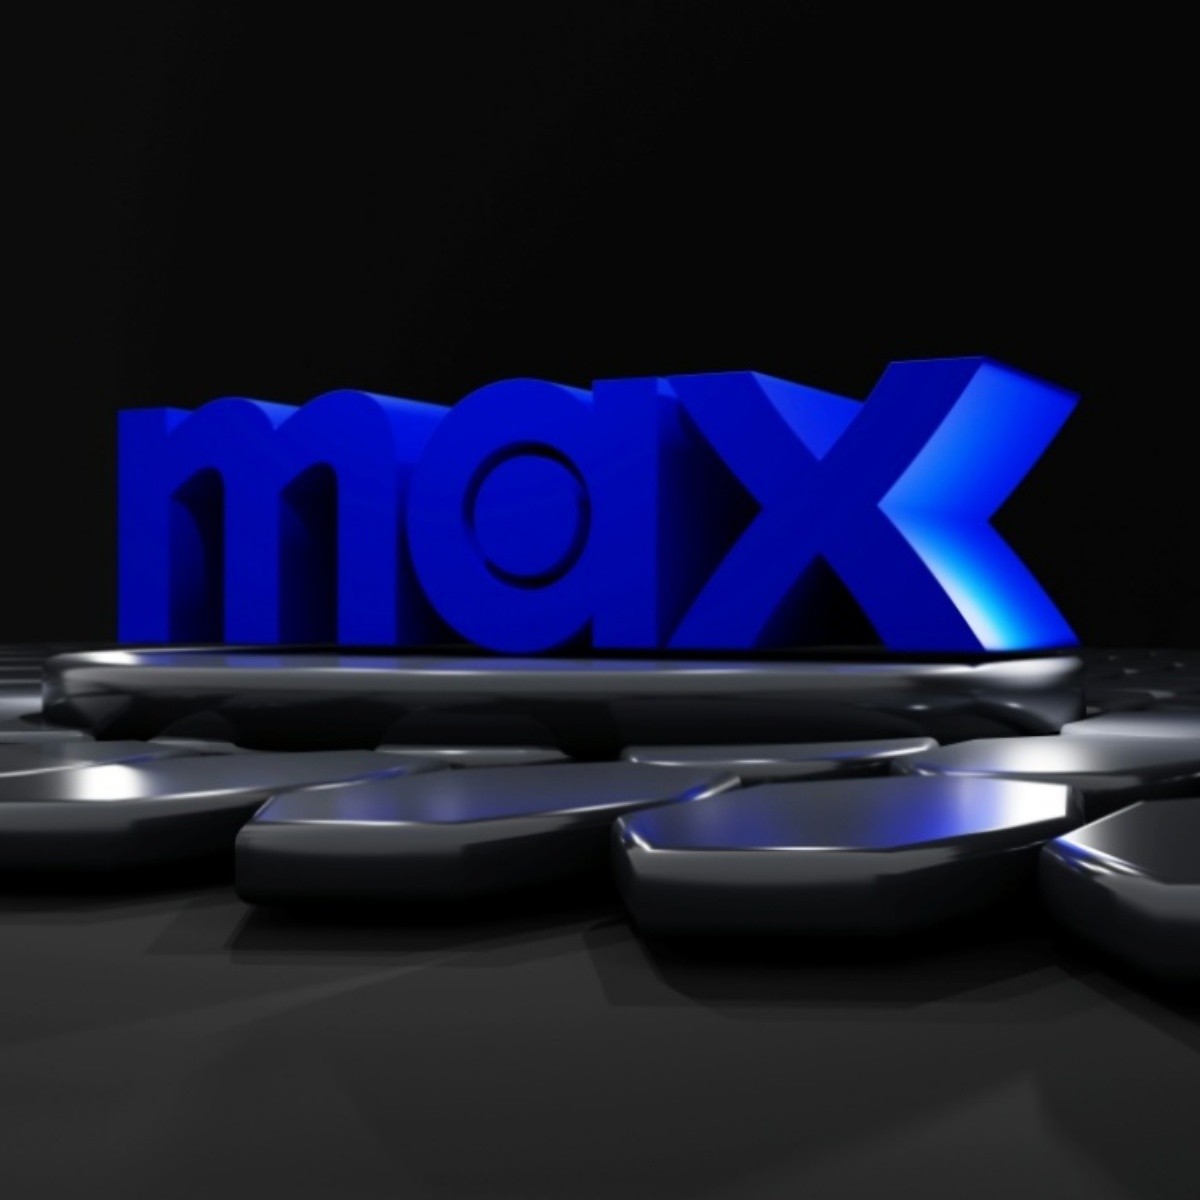 hbo max se convertirá en max en méxico: nuevos planes, precios y diferencias